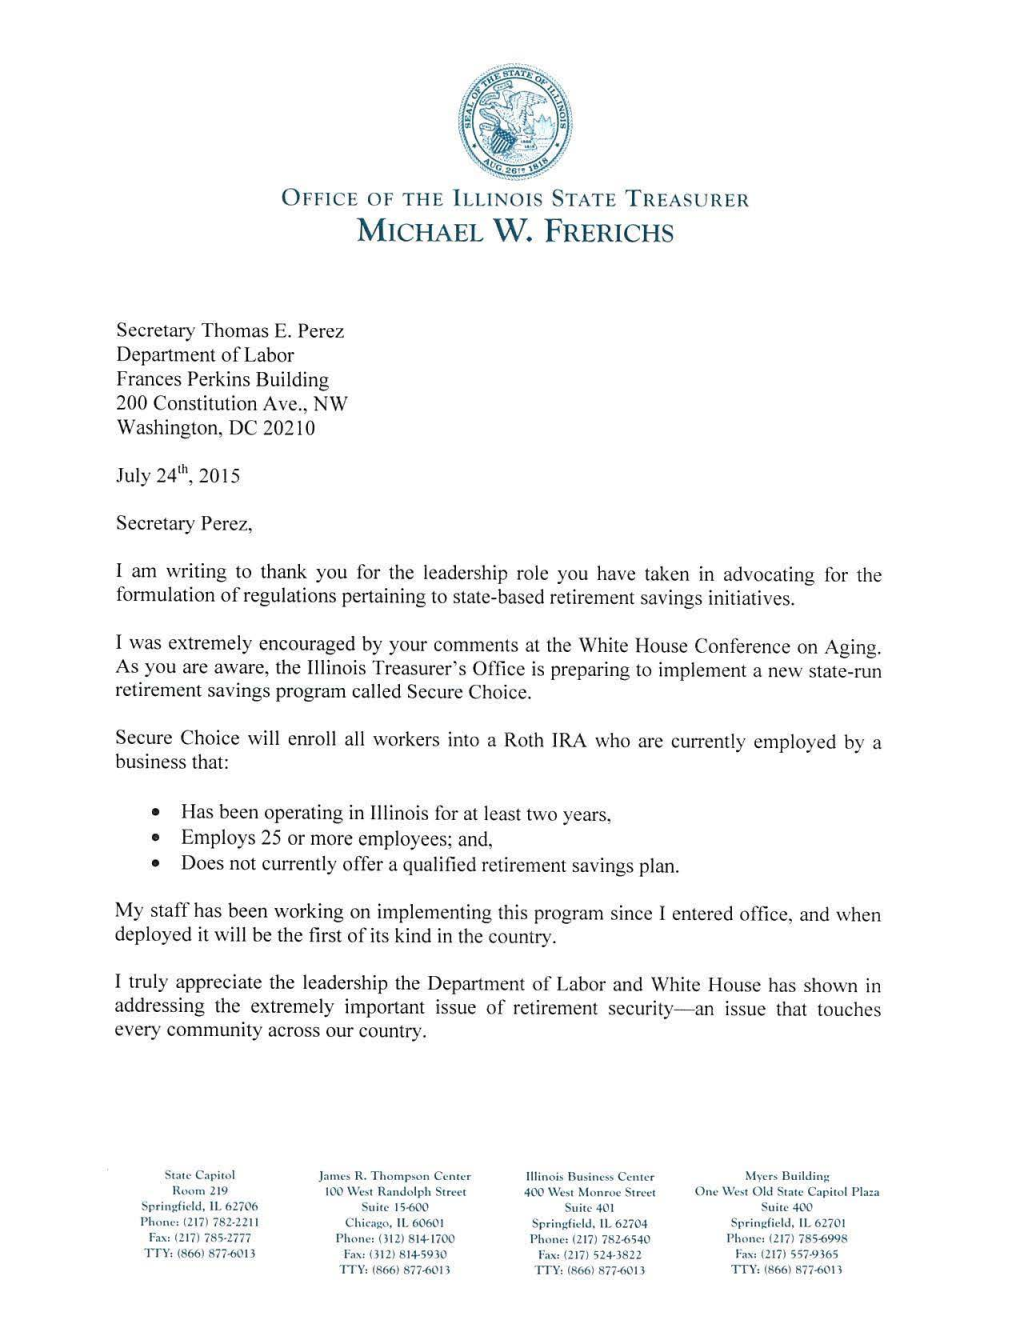 Illinois State Treasurer Thomas Perez Letter